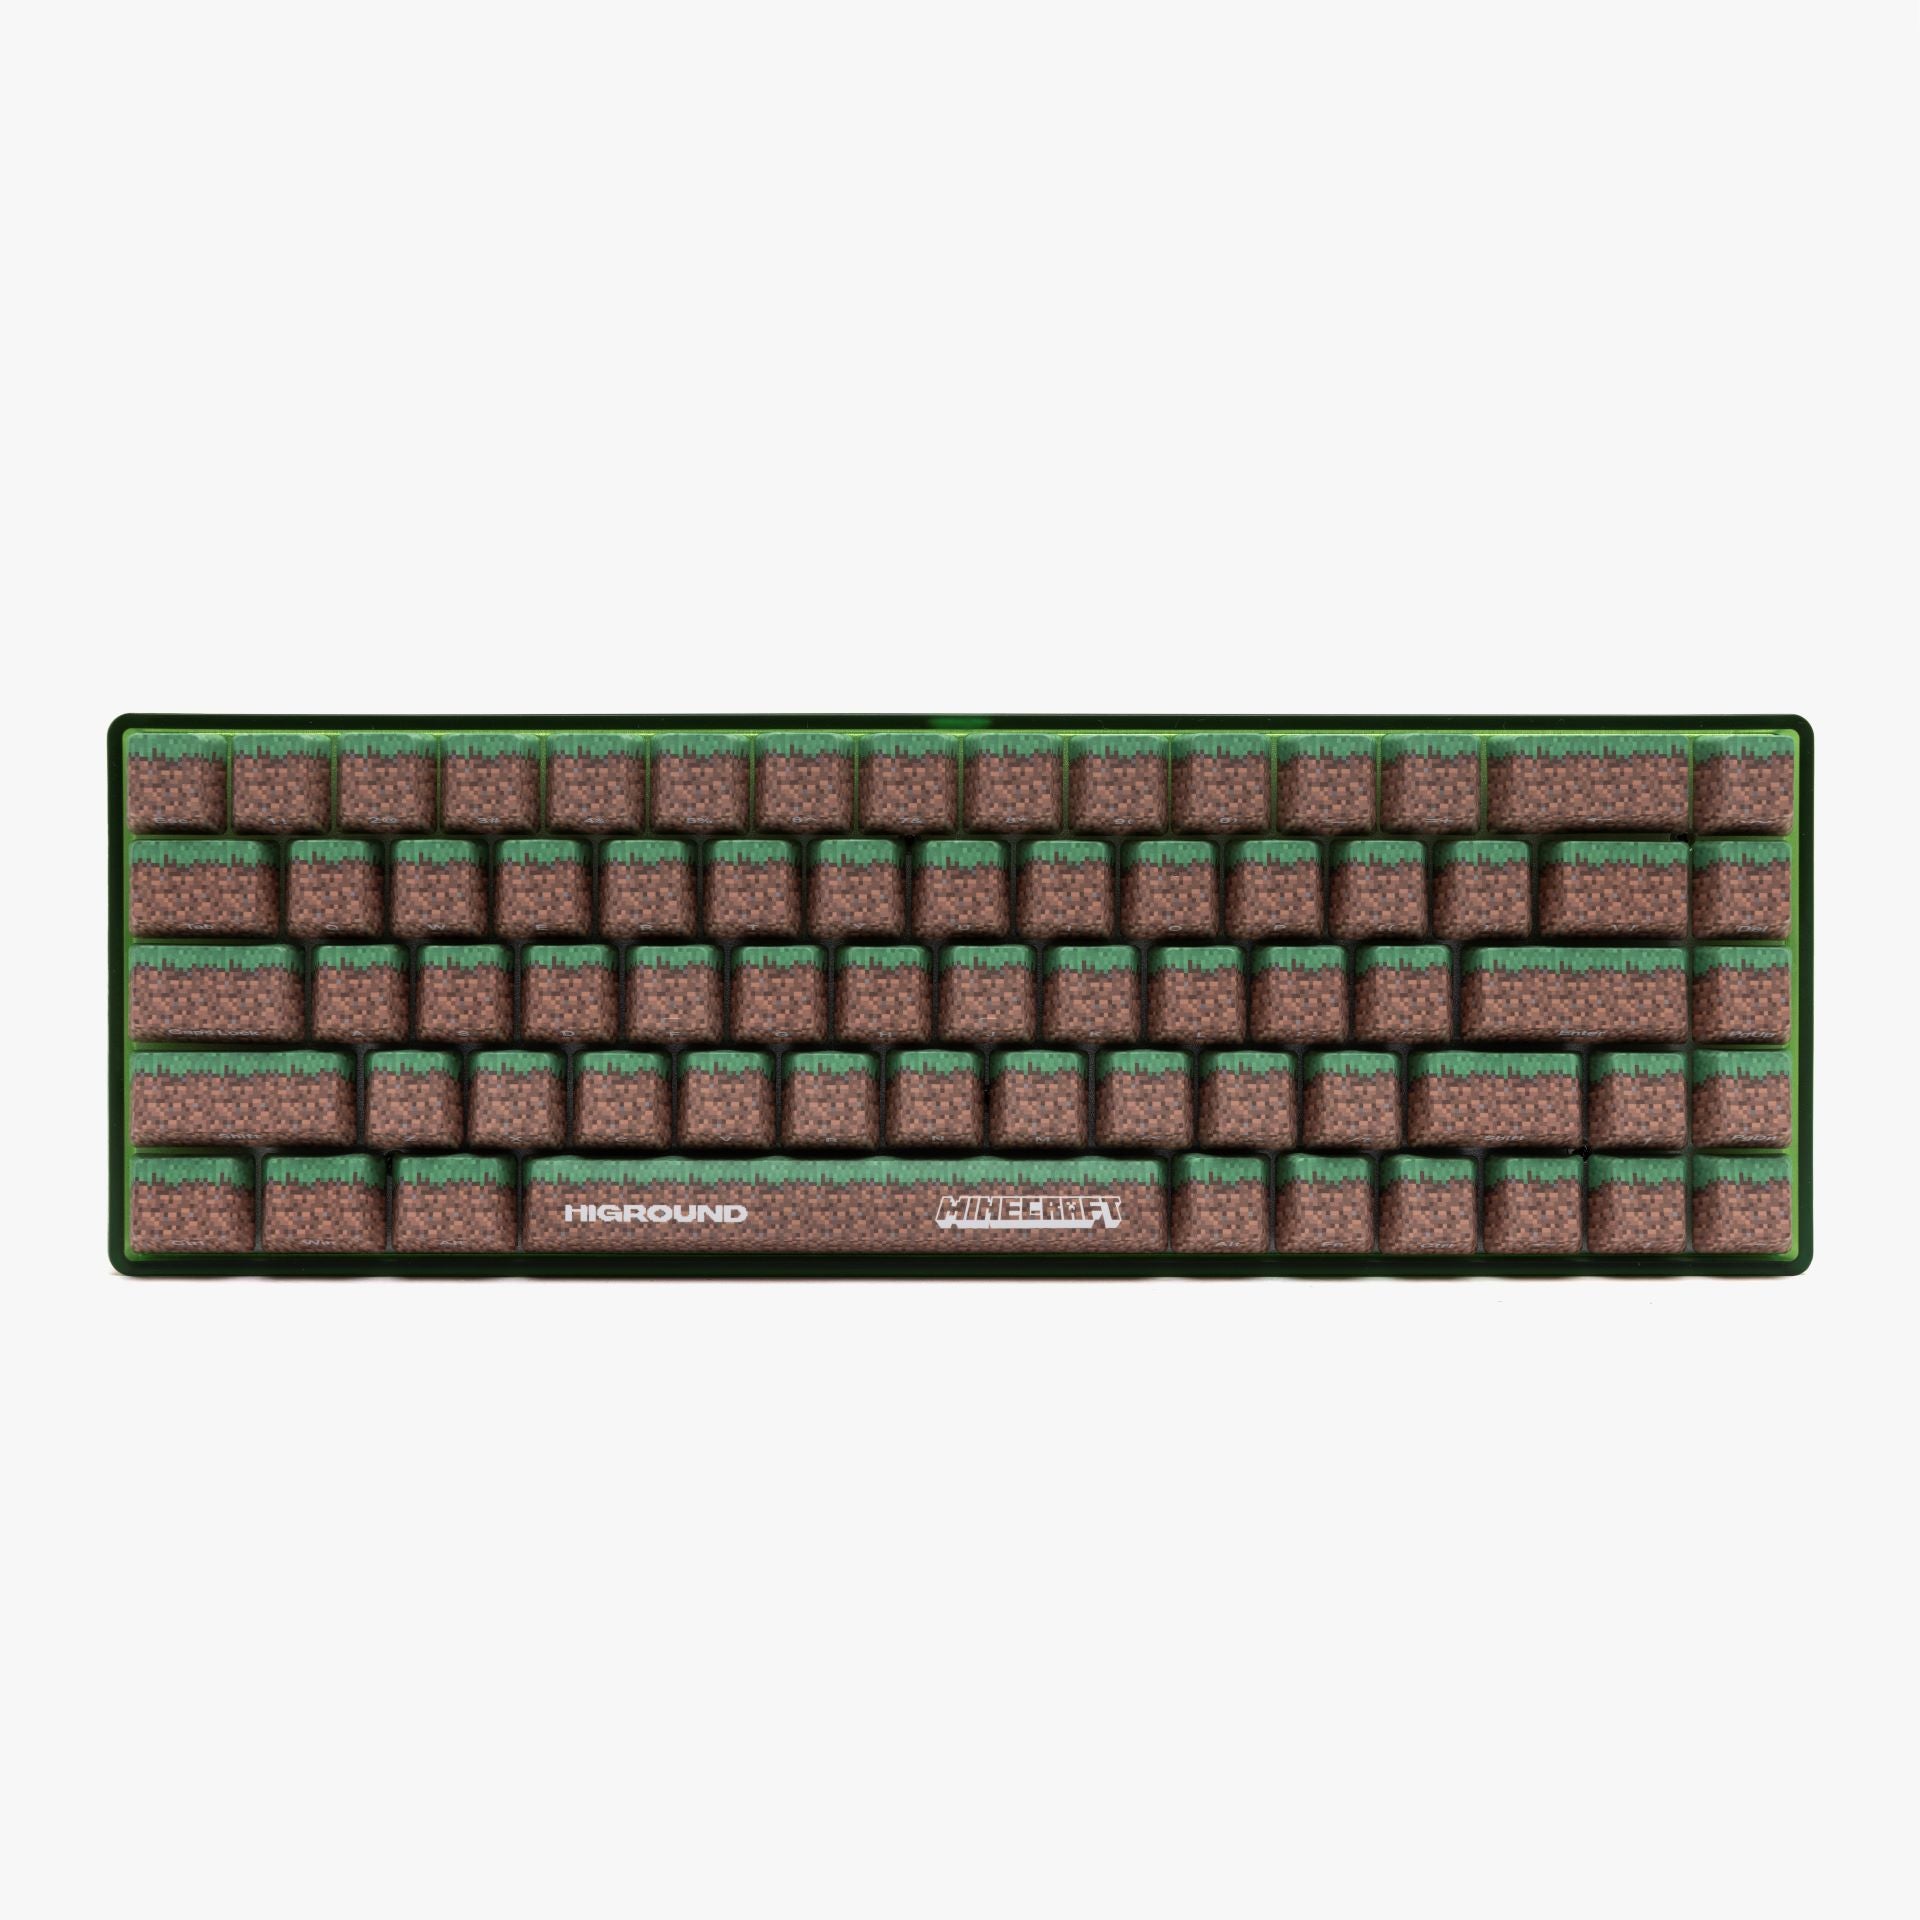 Basecamp 65 Keyboards – Higround